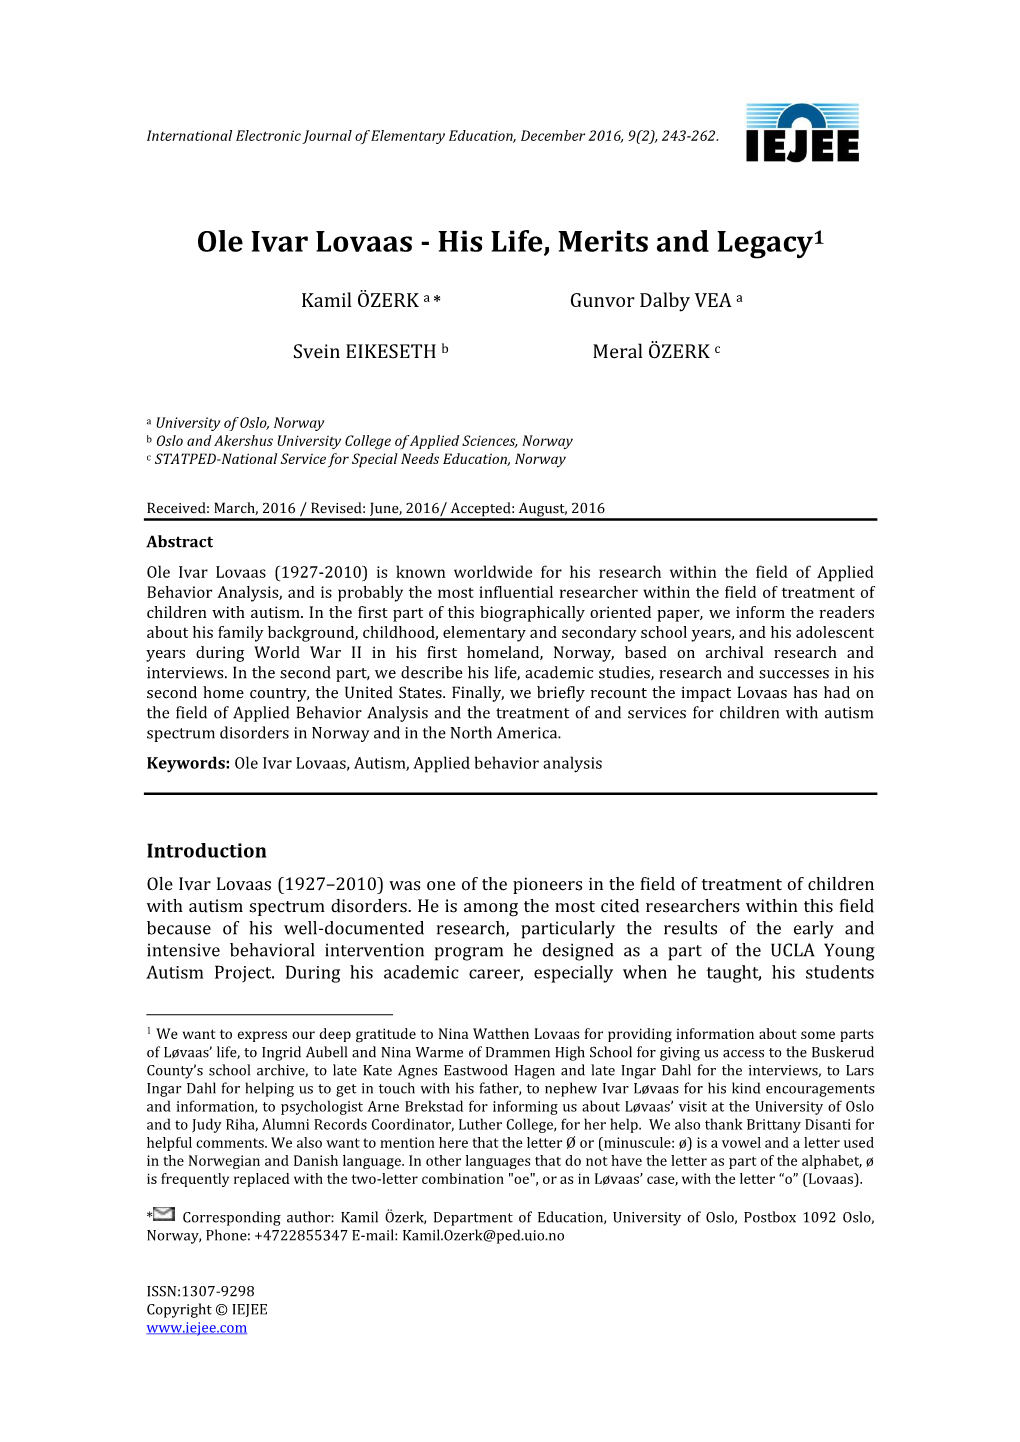 Ole Ivar Lovaas--His Life, Merits and Legacy